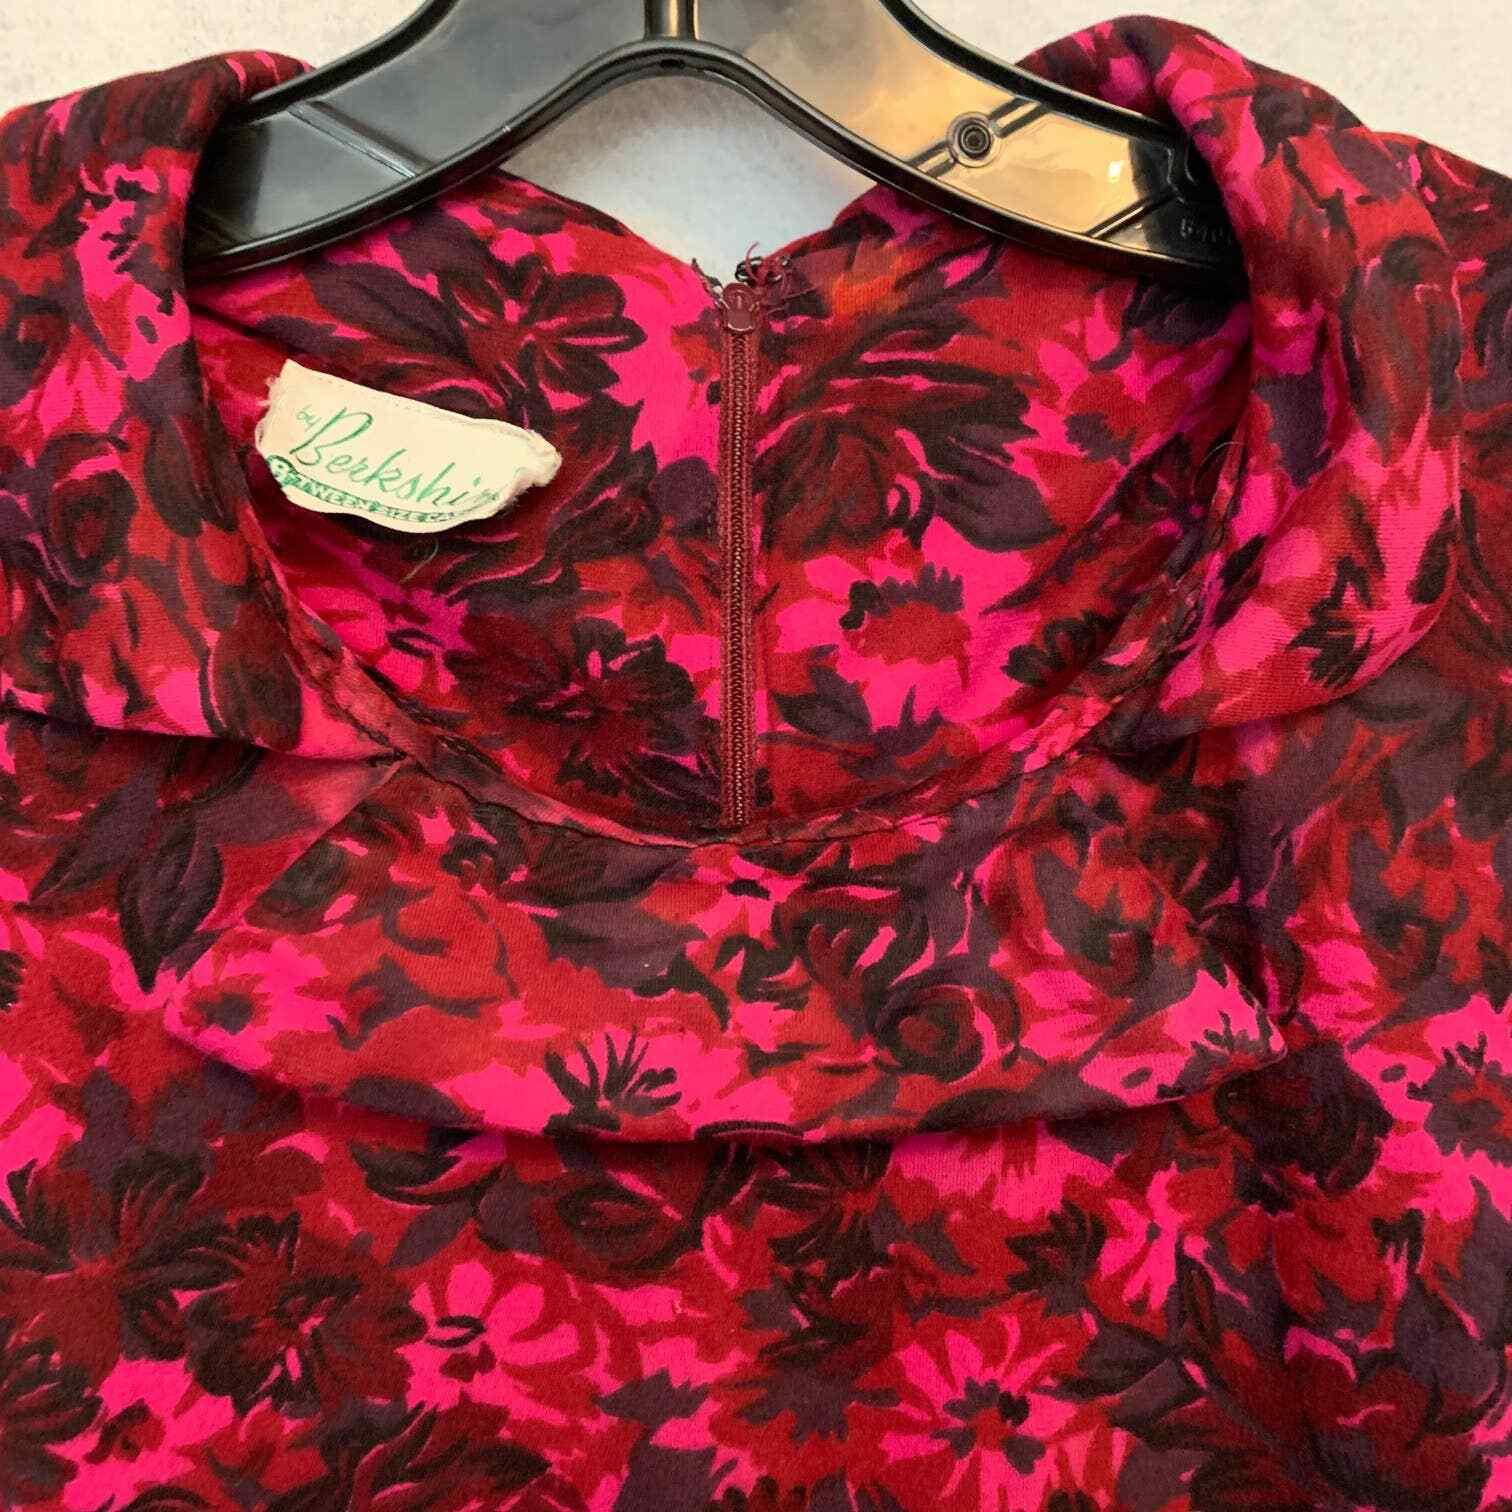 BERKSHIRE Vintage Floral Dress Red, Pink and Black - image 5